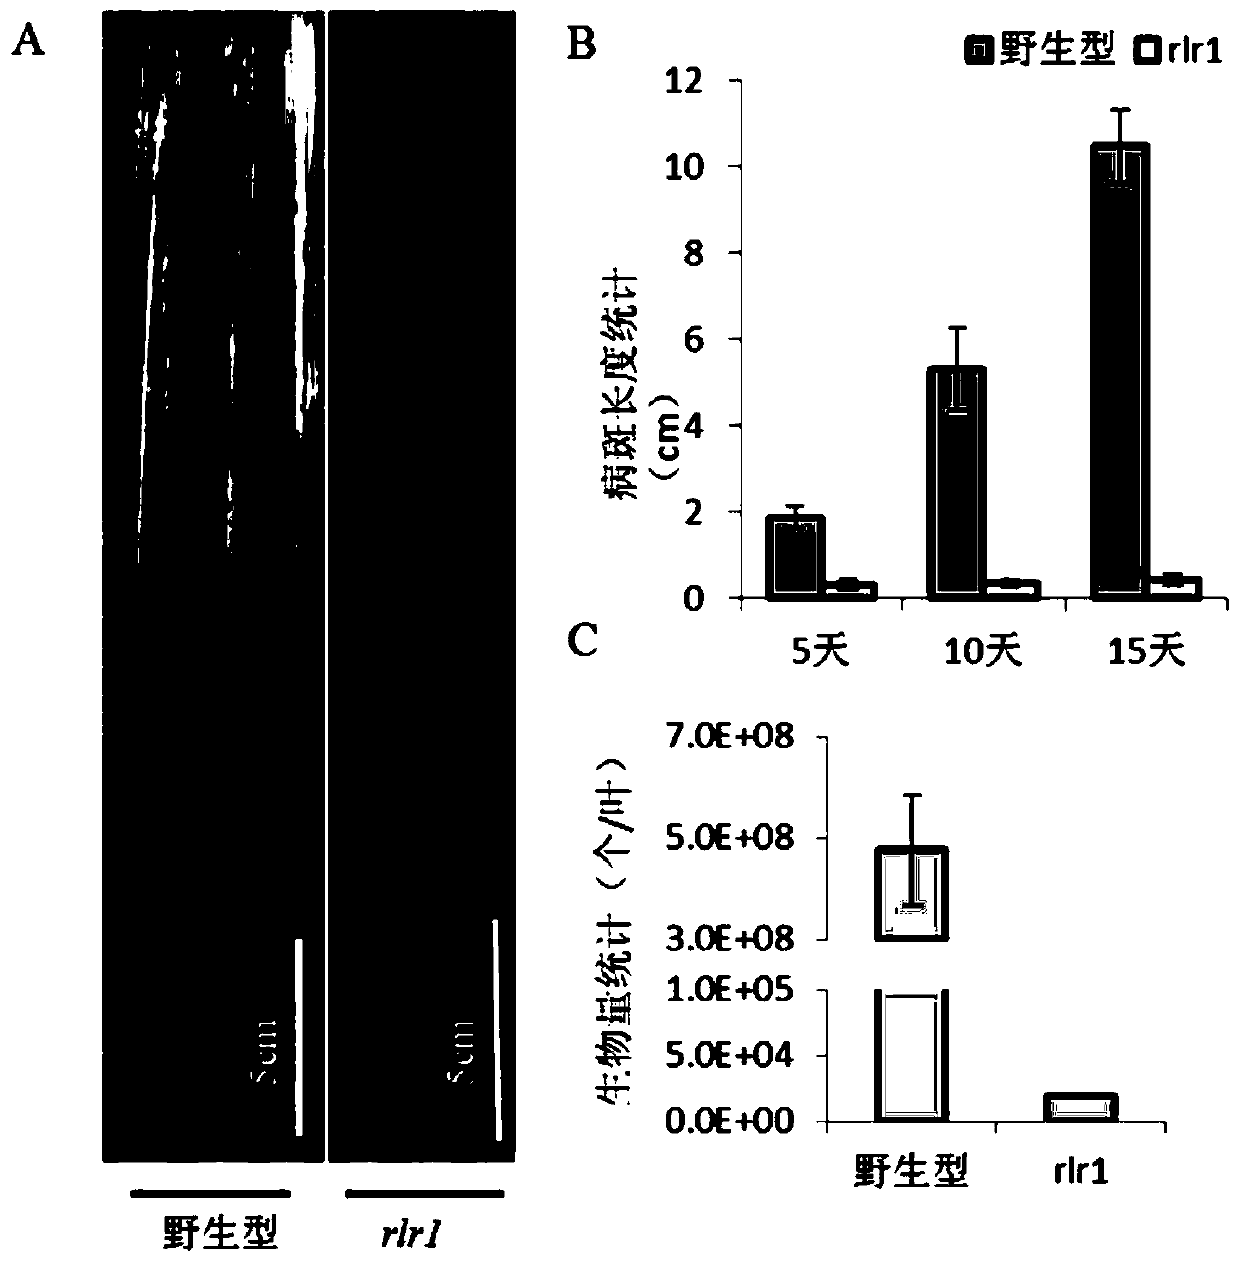 Anti-disease gene OsRLR1, transcription factor OsWRKY19 and application of anti-disease gene OsRLR1 and transcription factor OsWRKY19 in bacterial leaf blight resistant breeding of rice